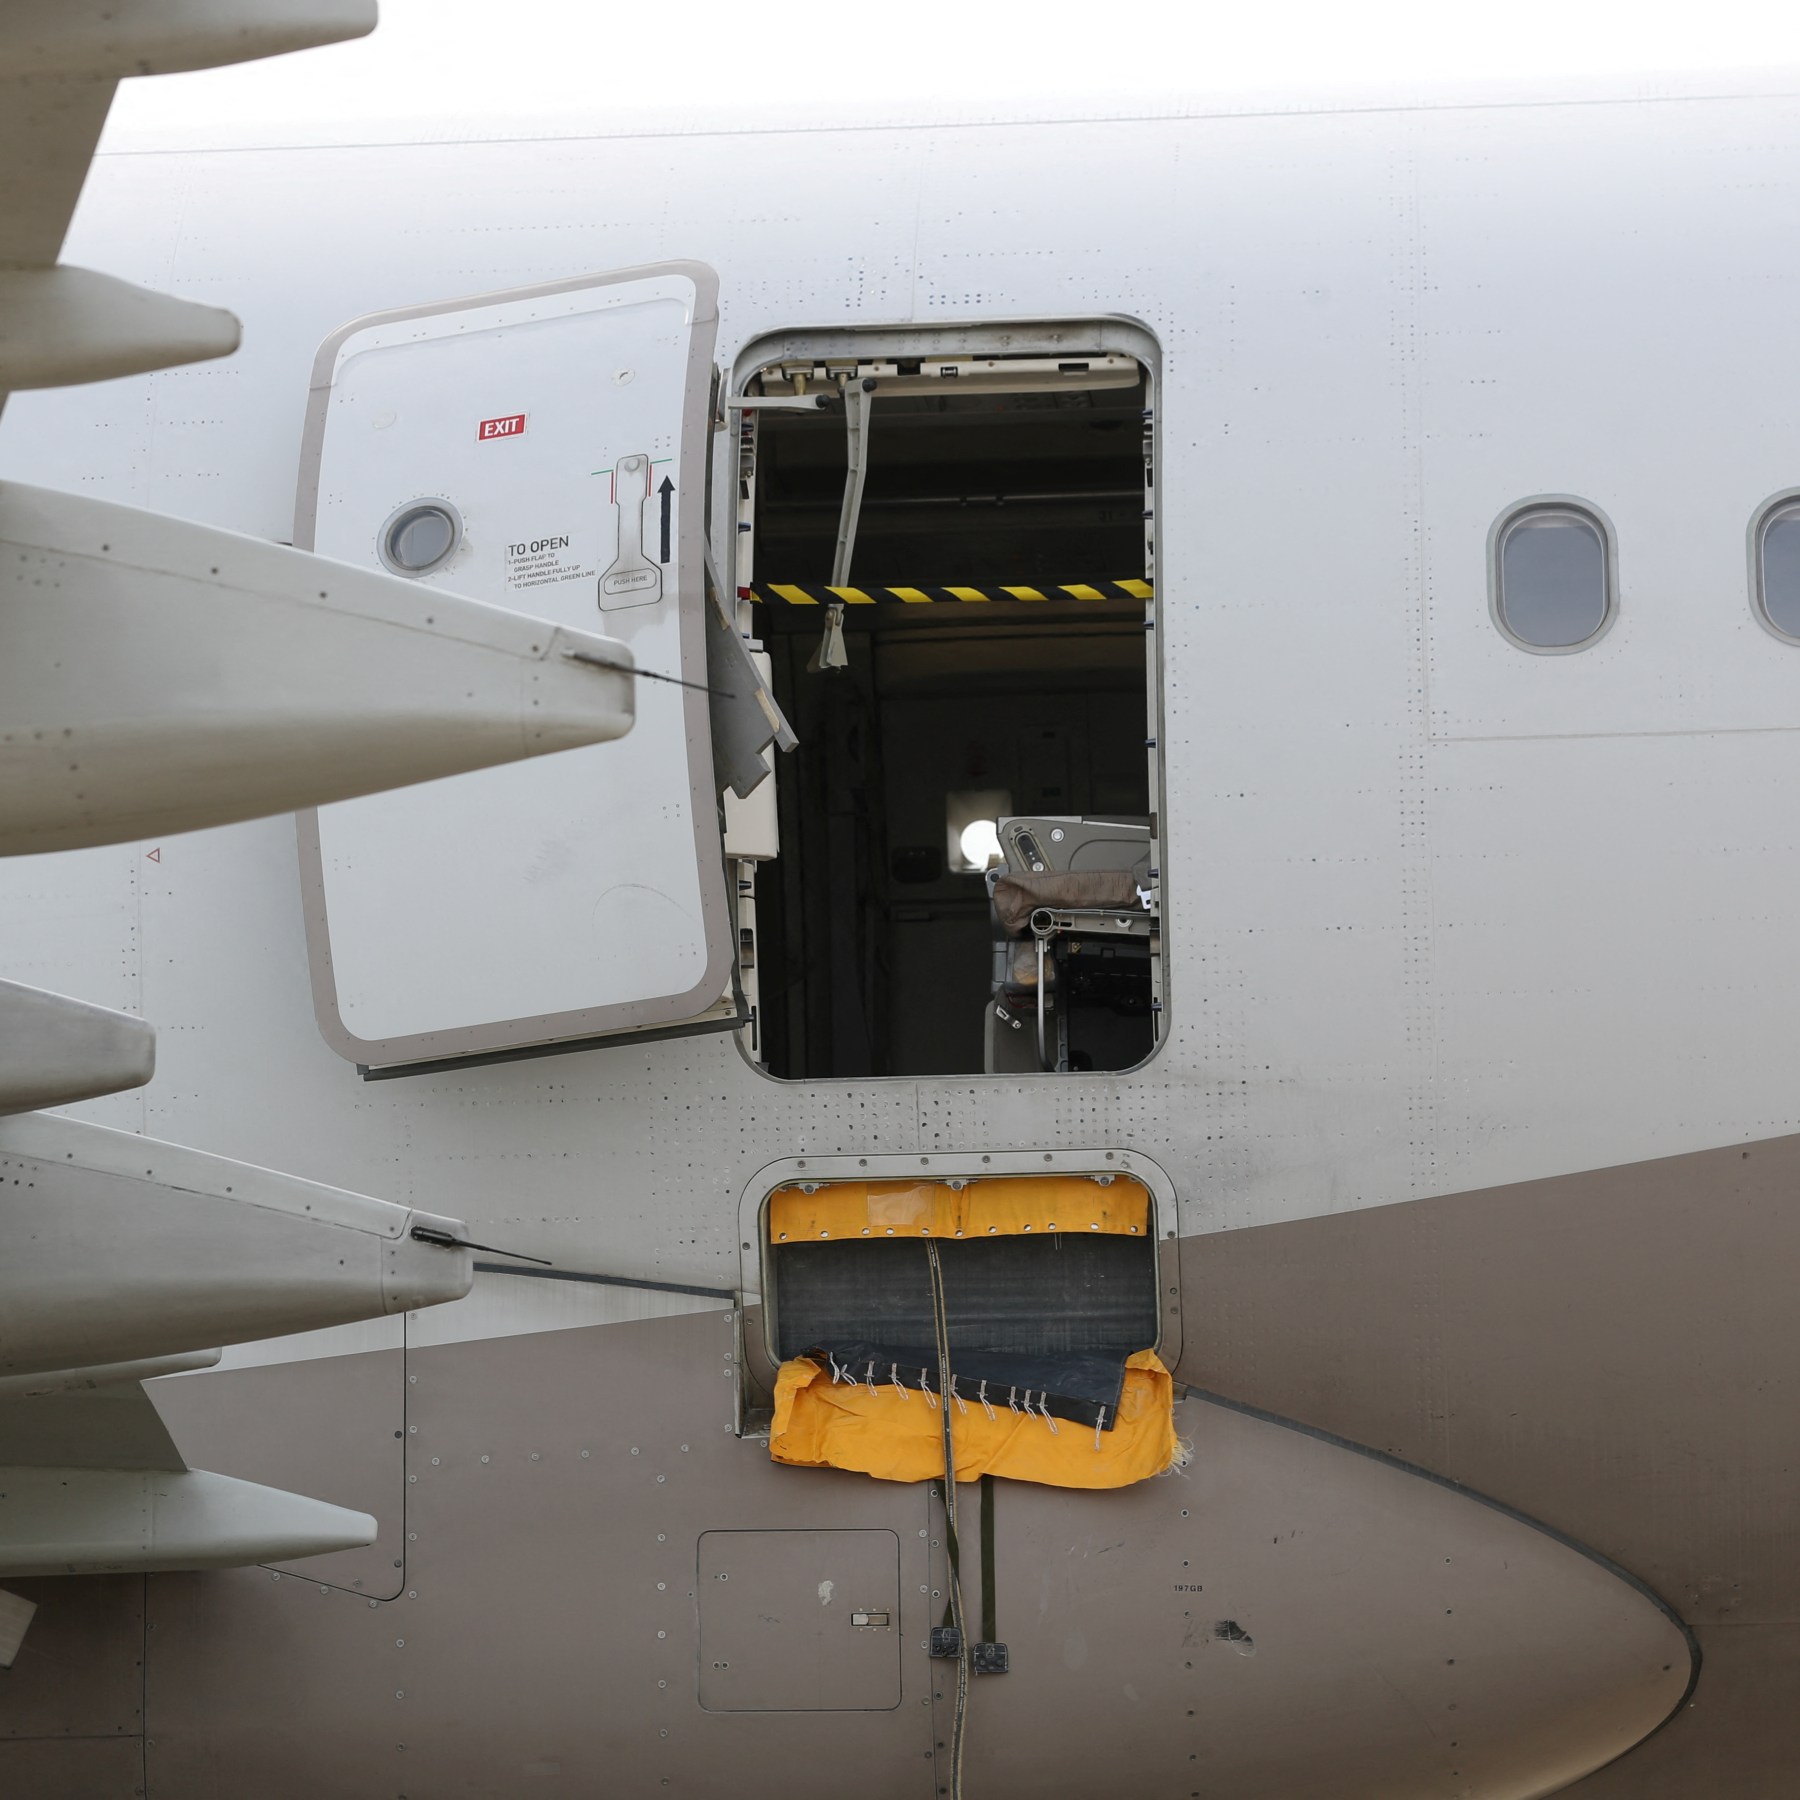 S Korea's Asiana Airlines bans emergency seats after door opens | Aviation  News | Al Jazeera